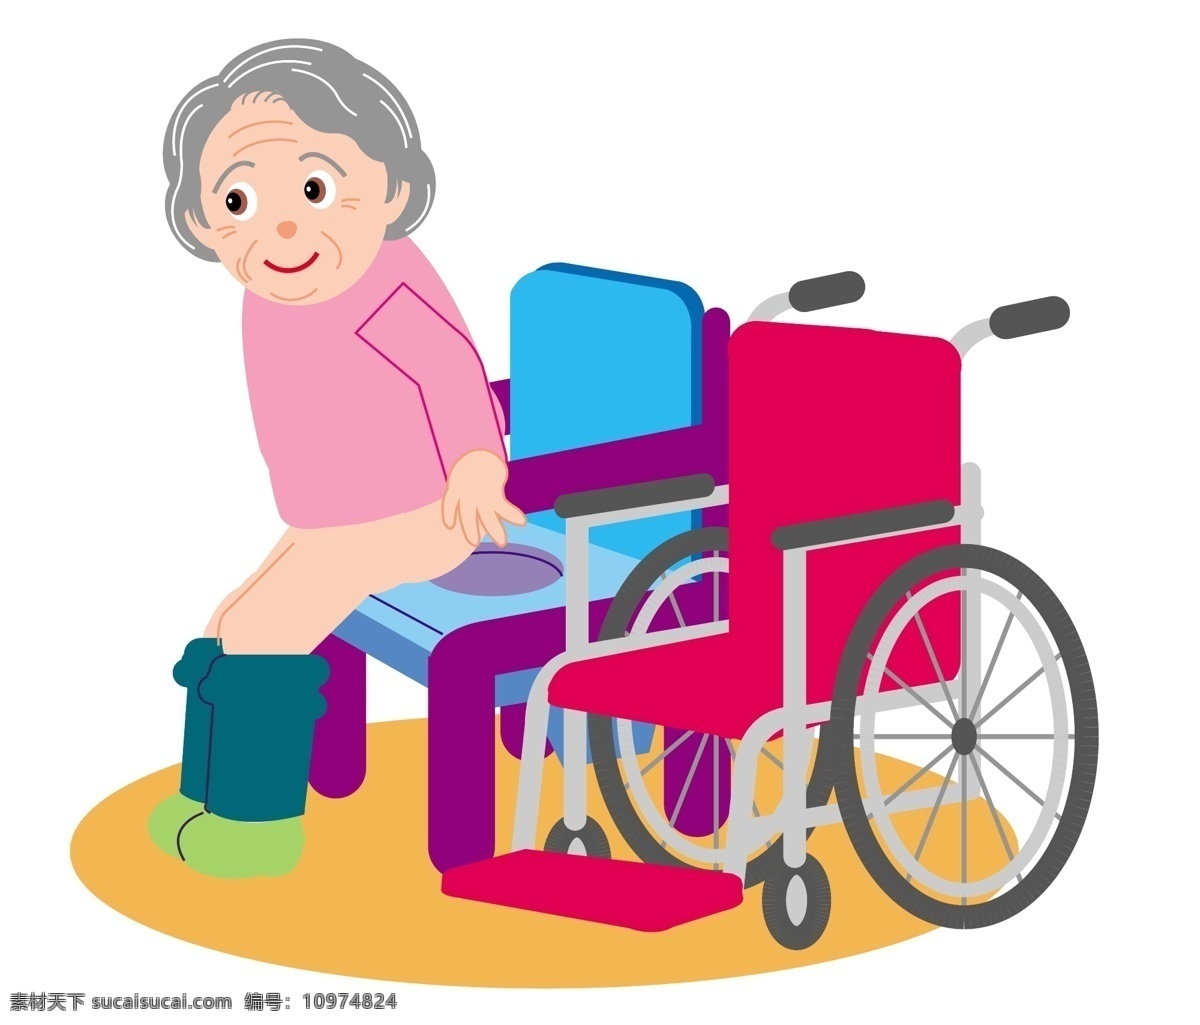 卡通 老人 坐 轮椅 老年生活 矢量 模板下载 家庭 祖父 祖母 夫人 生活 老年人的生活 旅行 晚年 矢量卡通